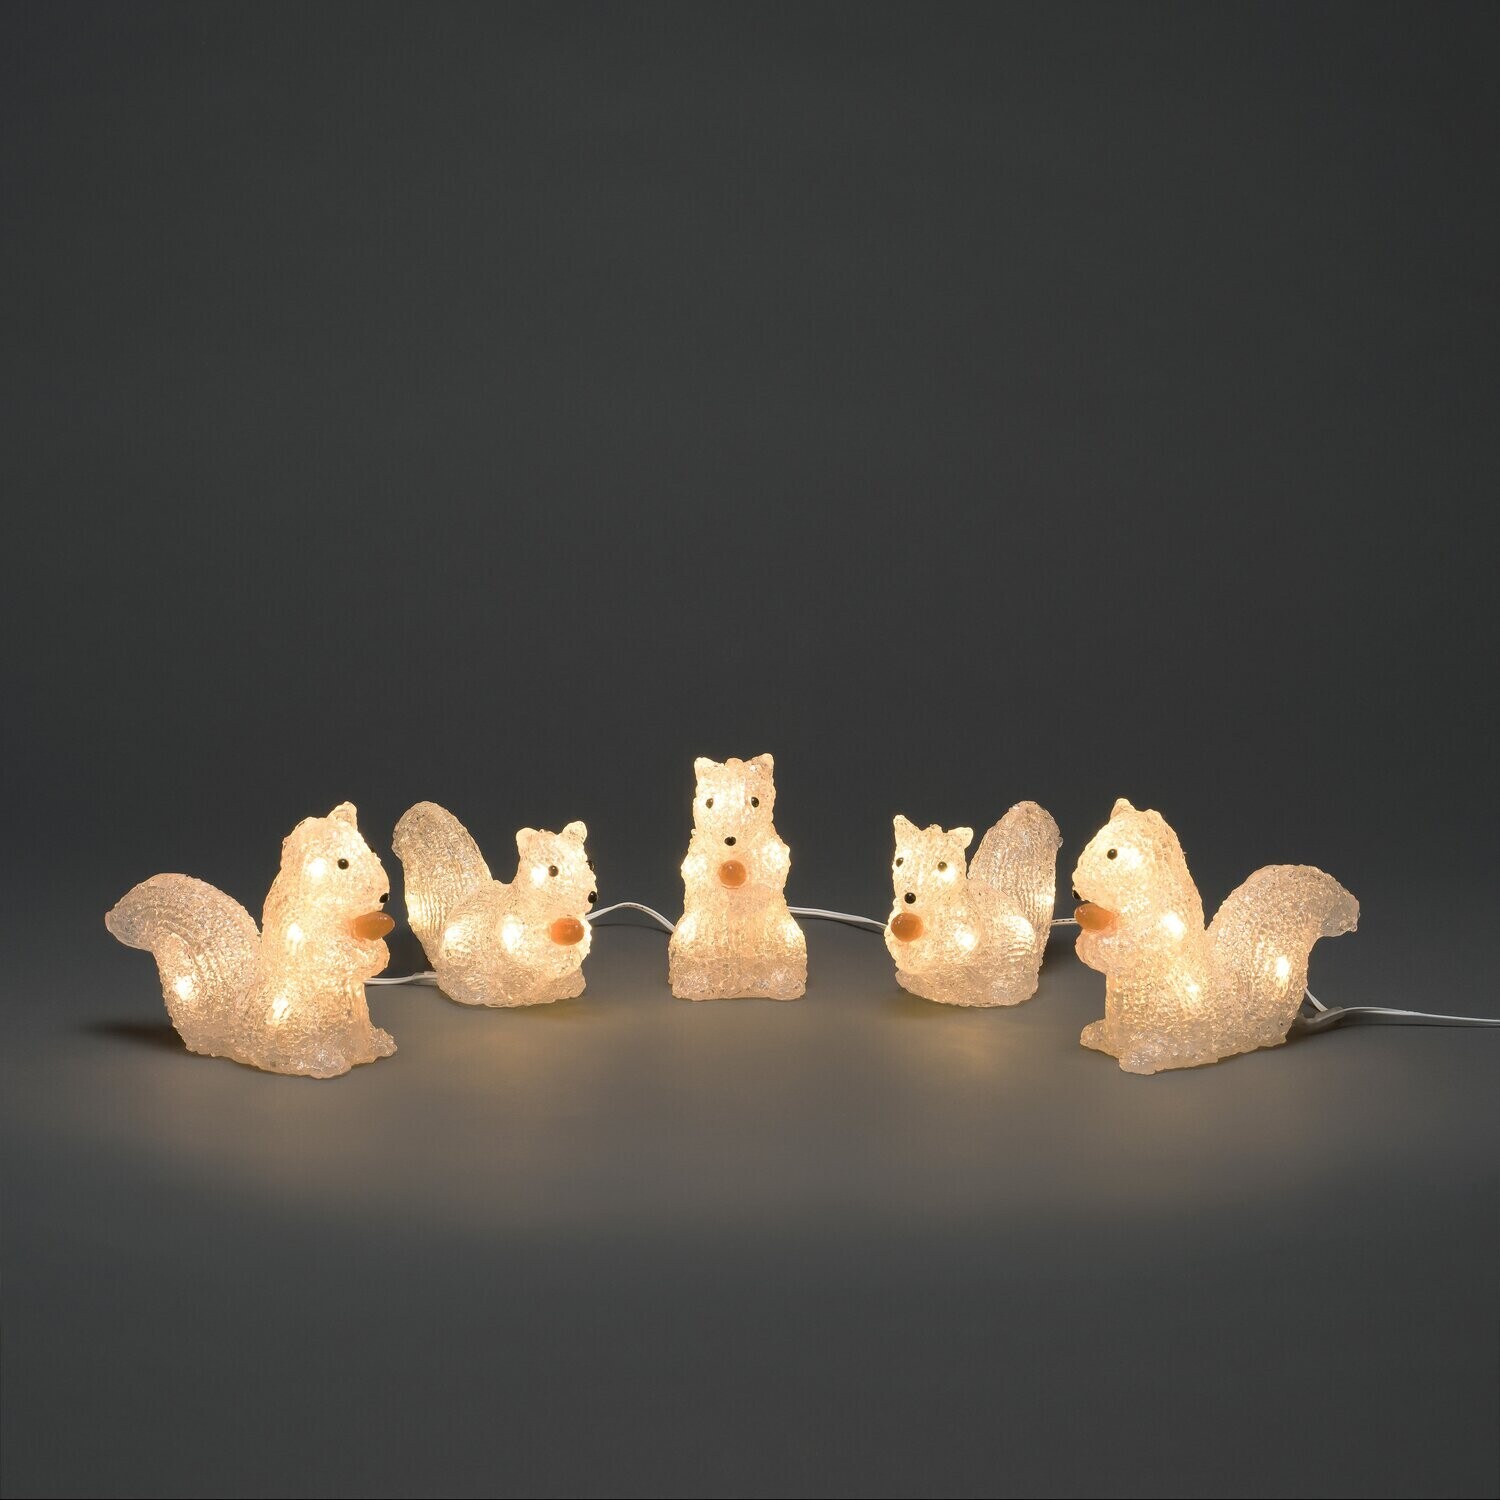 Konstsmide LED-Lichterkette Eichhörnchen warmweiß (6287-103) ab € 35,00 |  Preisvergleich bei